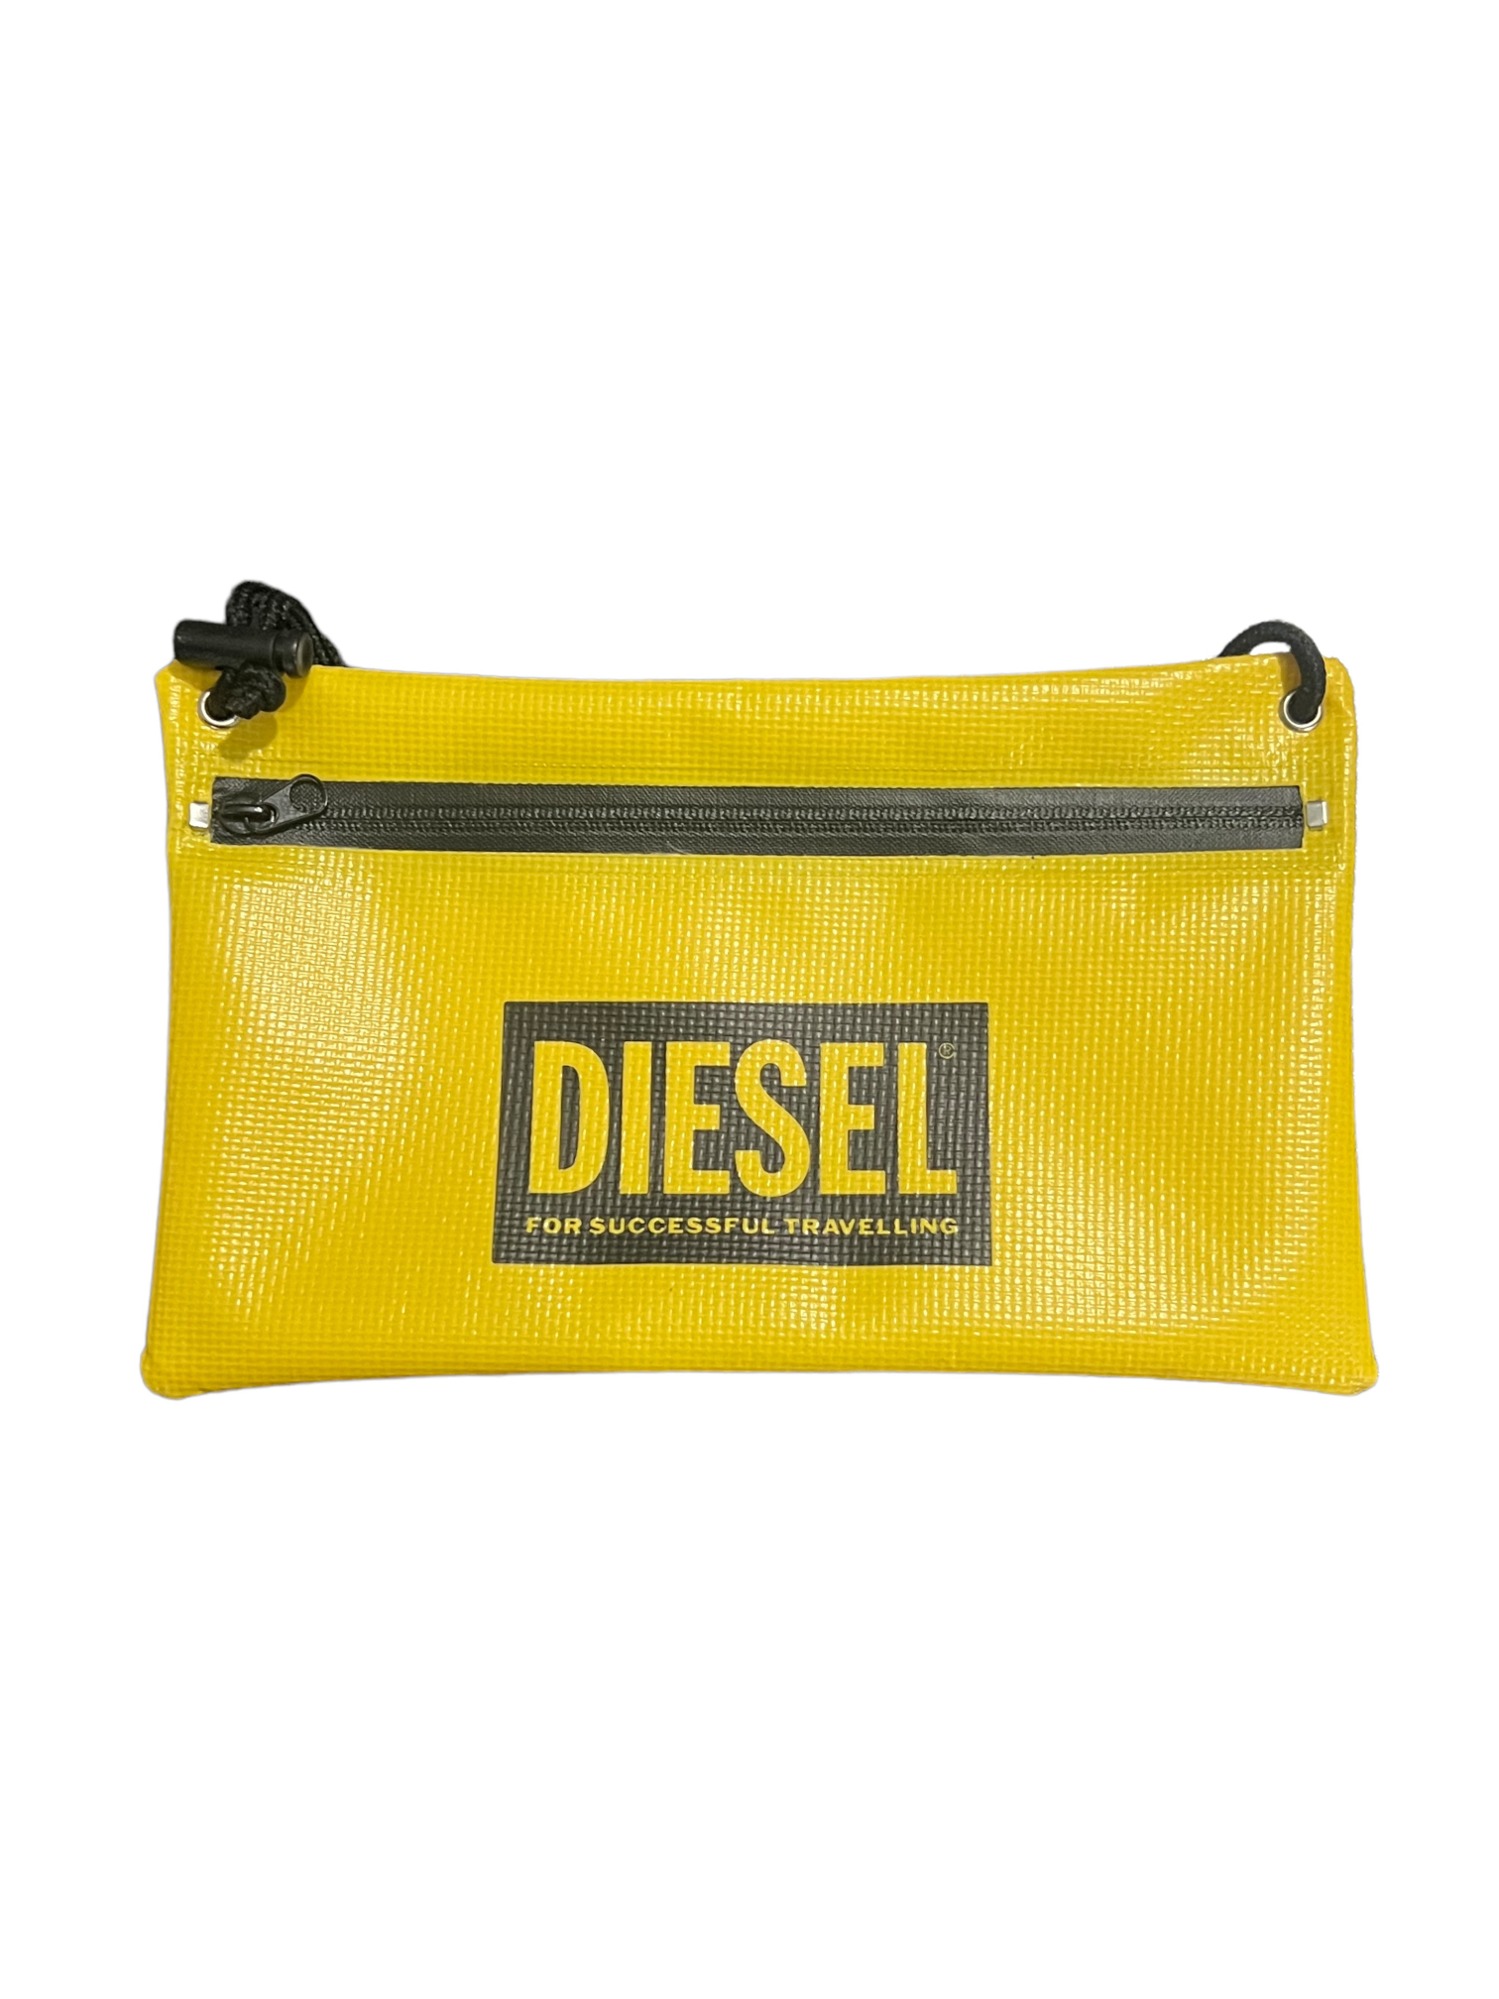 DIESEL Tarpaulin Bag (Yellow)